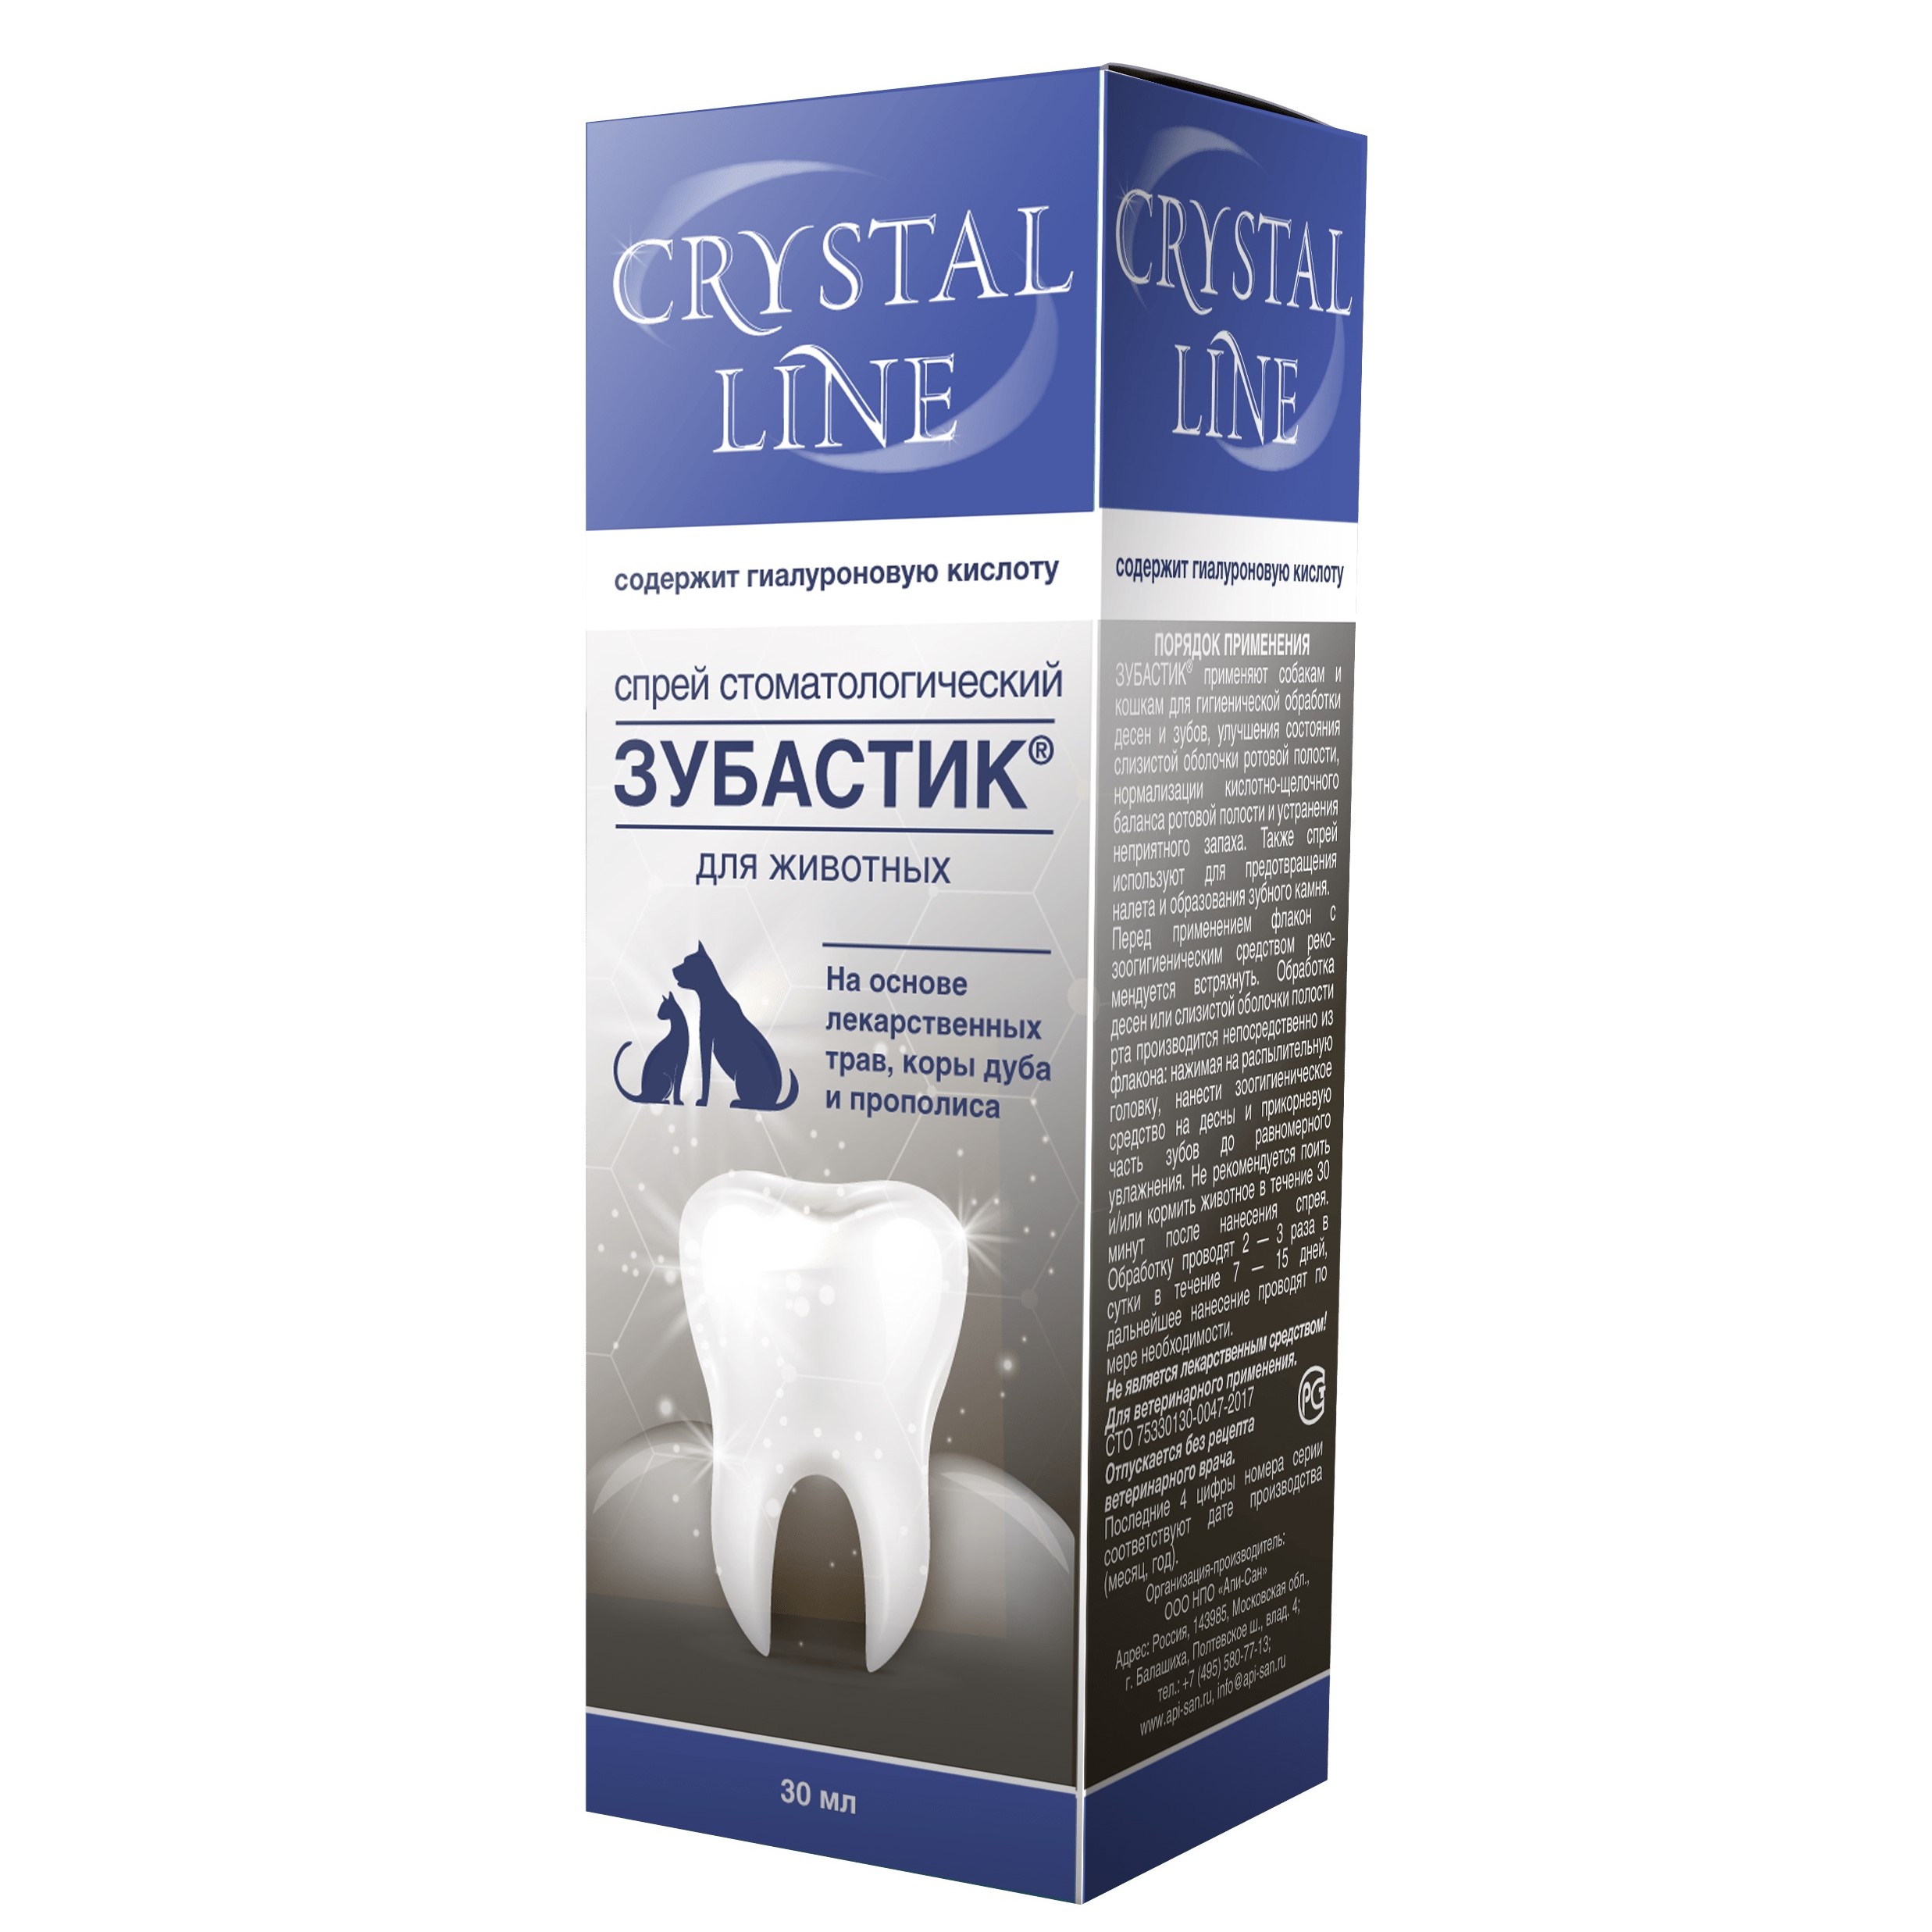 Apicenna CRYSTAL LINE Зубастик Спрей стоматологический для животных, 30 мл 